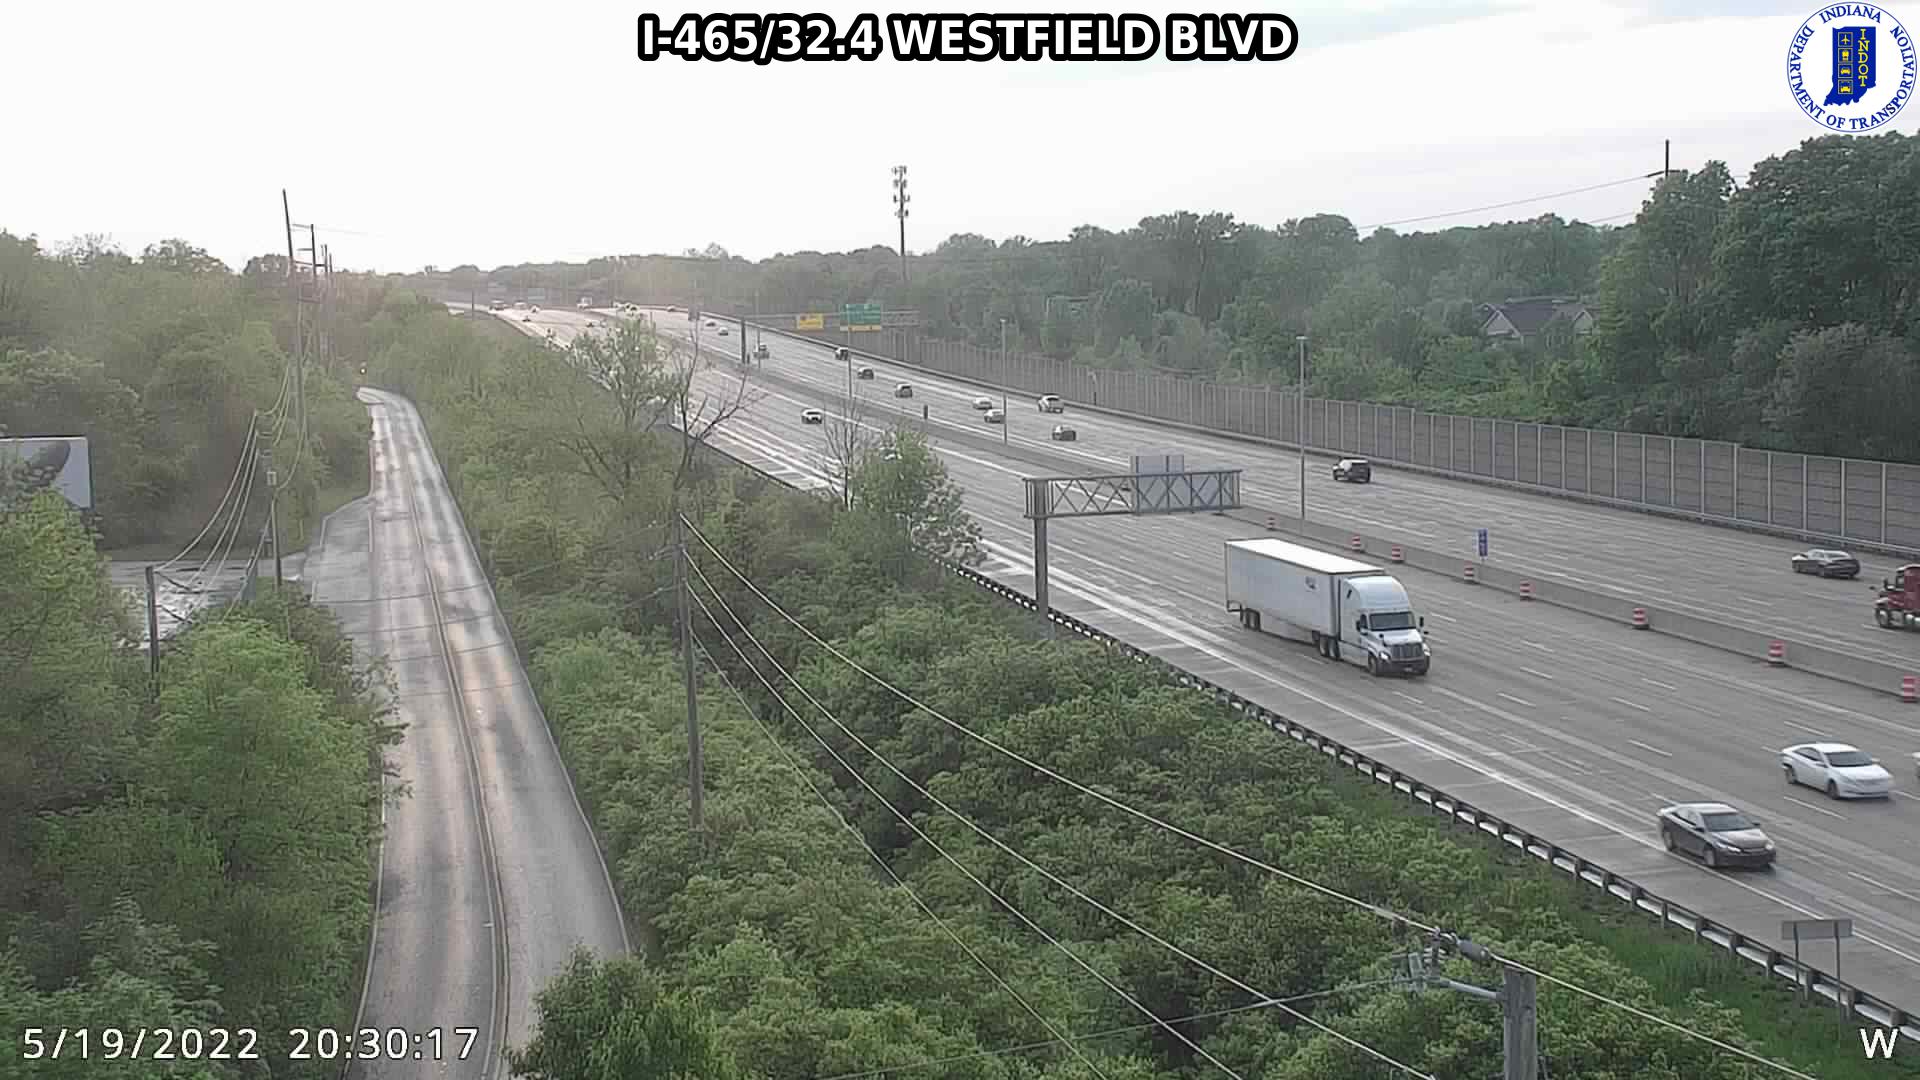 I-465/32.4 WESTFIELD BLVD (20) () - Indiana